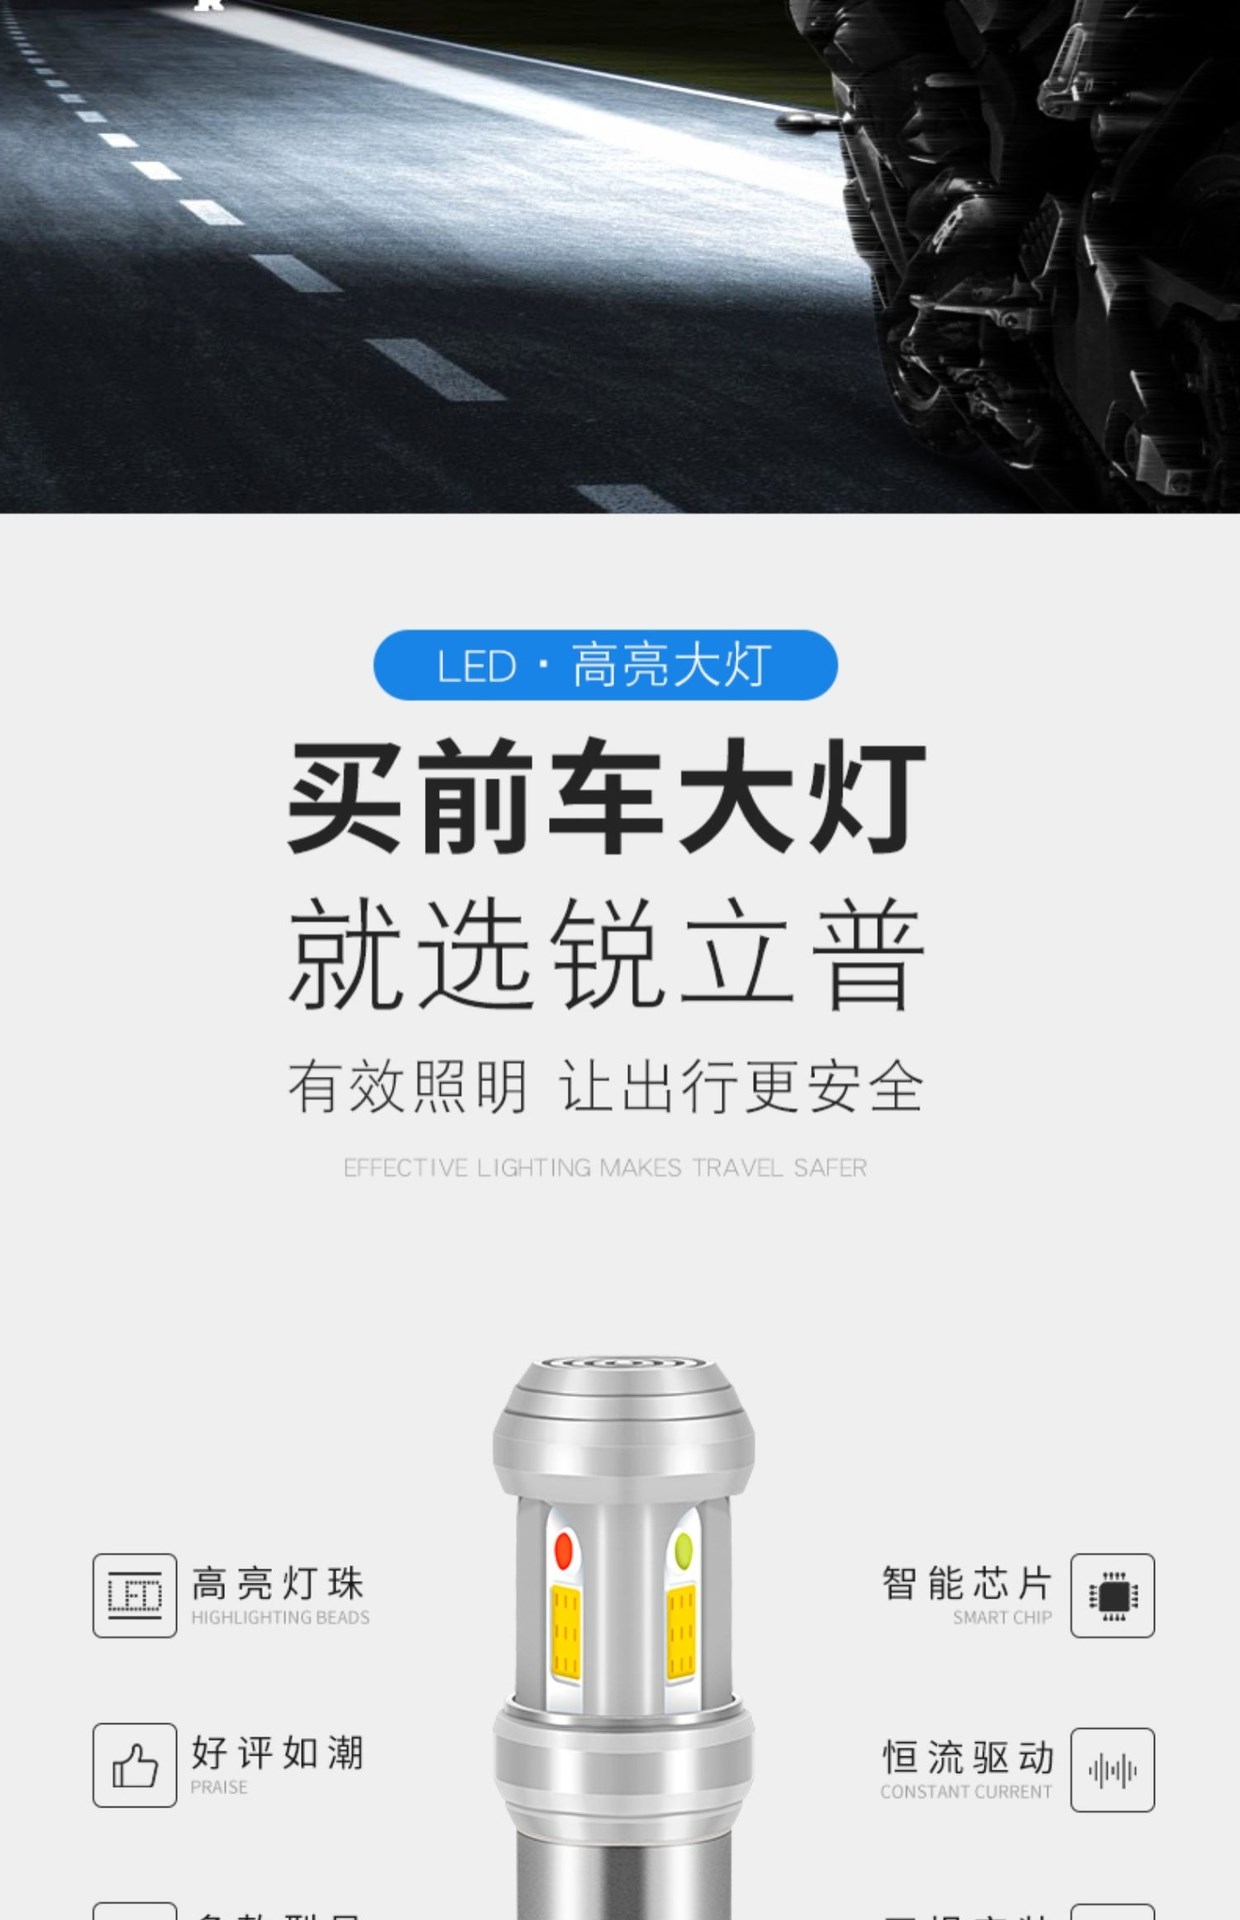 Thích hợp cho bóng đèn xe máy Qianjiang Yulong QJ125-26 a1-1 được sửa đổi bóng đèn LED nhấp nháy siêu sáng chói - Đèn xe máy